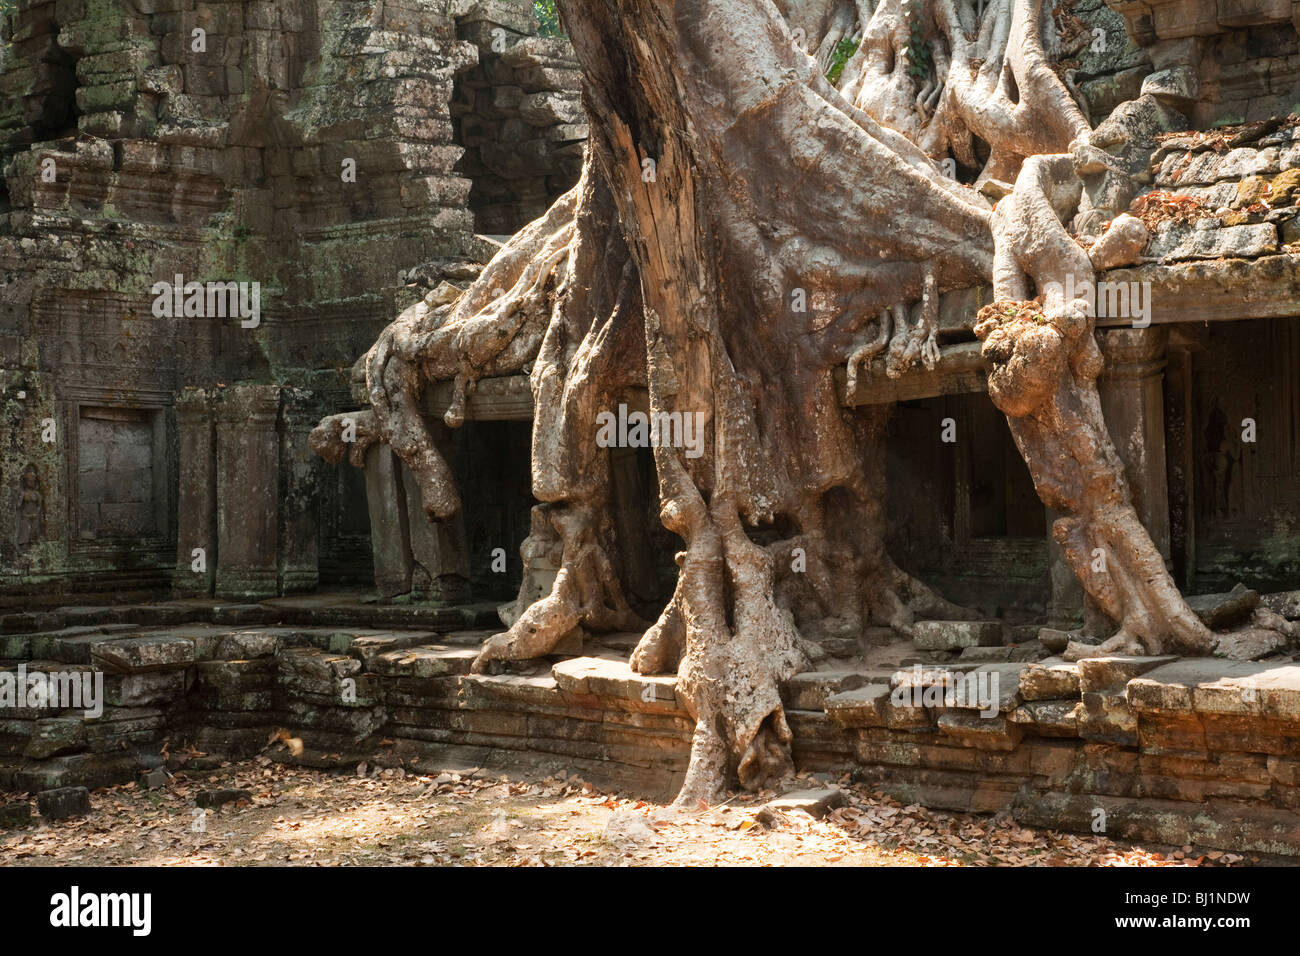 Ficus Strangulosa Baum, der über eine Tür in den antiken Ruinen von Angkor Wat Ort in Kambodscha Stockfoto